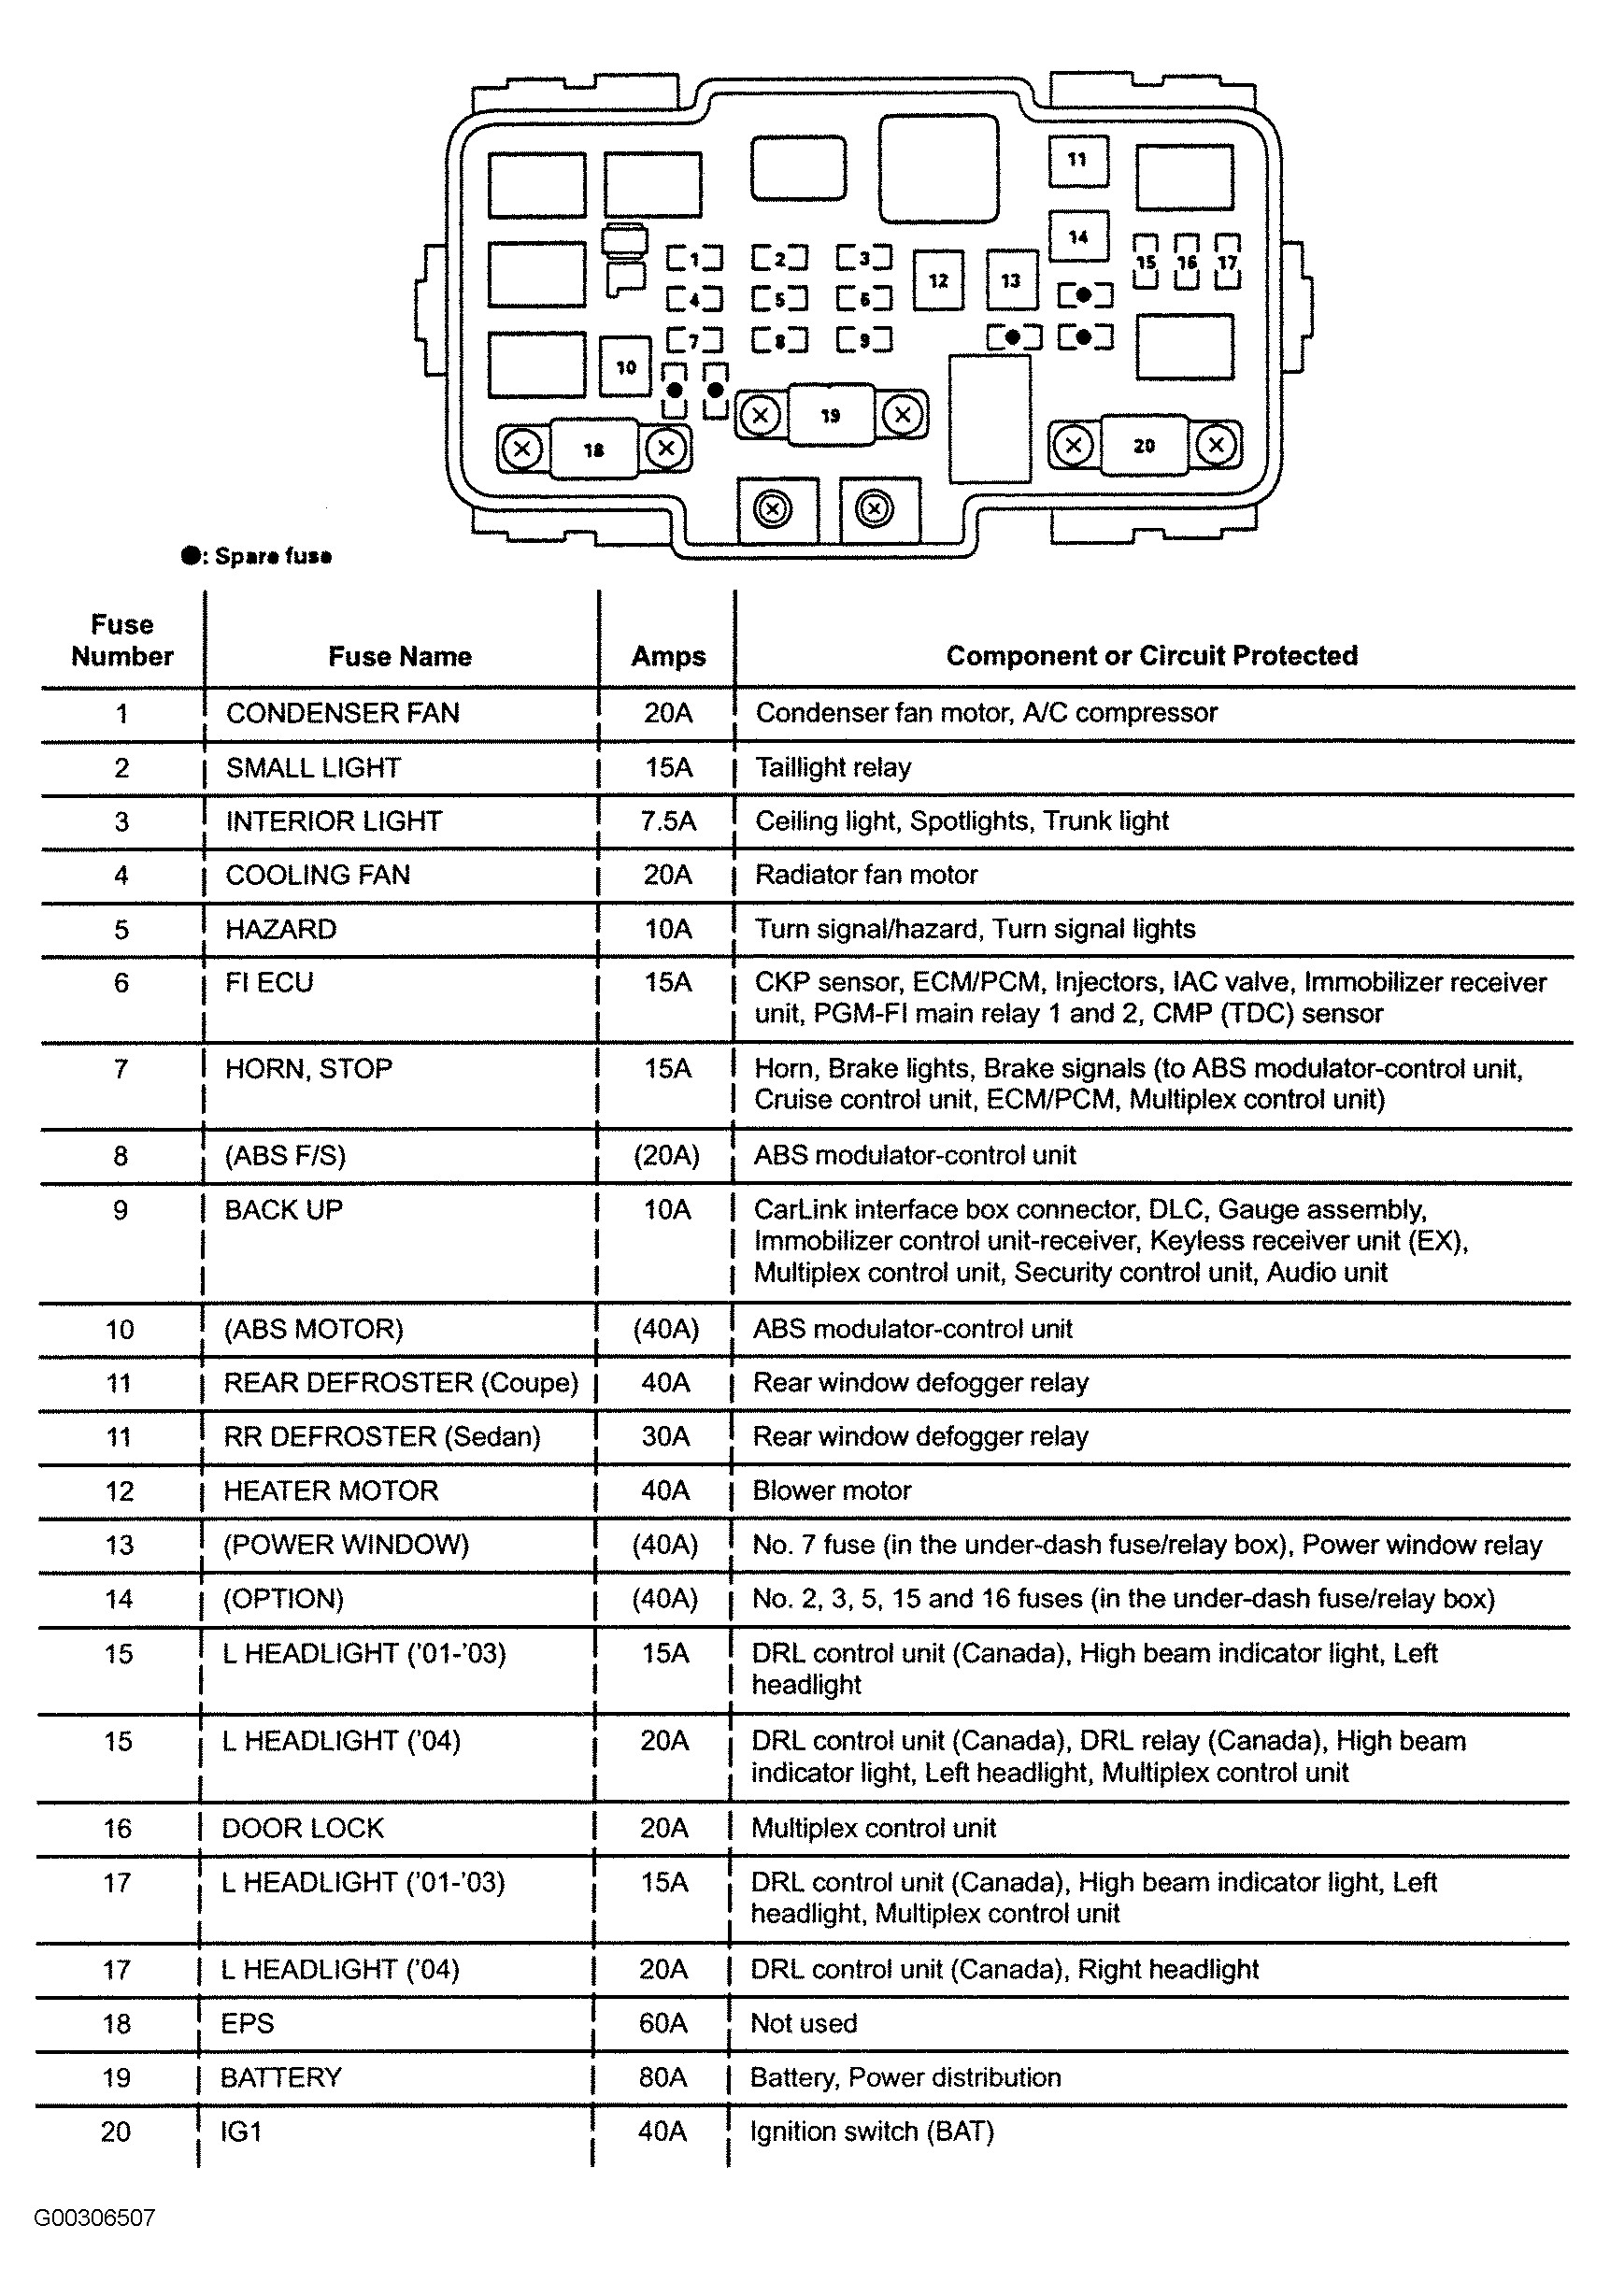 1996 Honda Civic Ex Engine Diagram 2002 Honda Civic Fuse Diagram Wiring Diagram Database Of 1996 Honda Civic Ex Engine Diagram